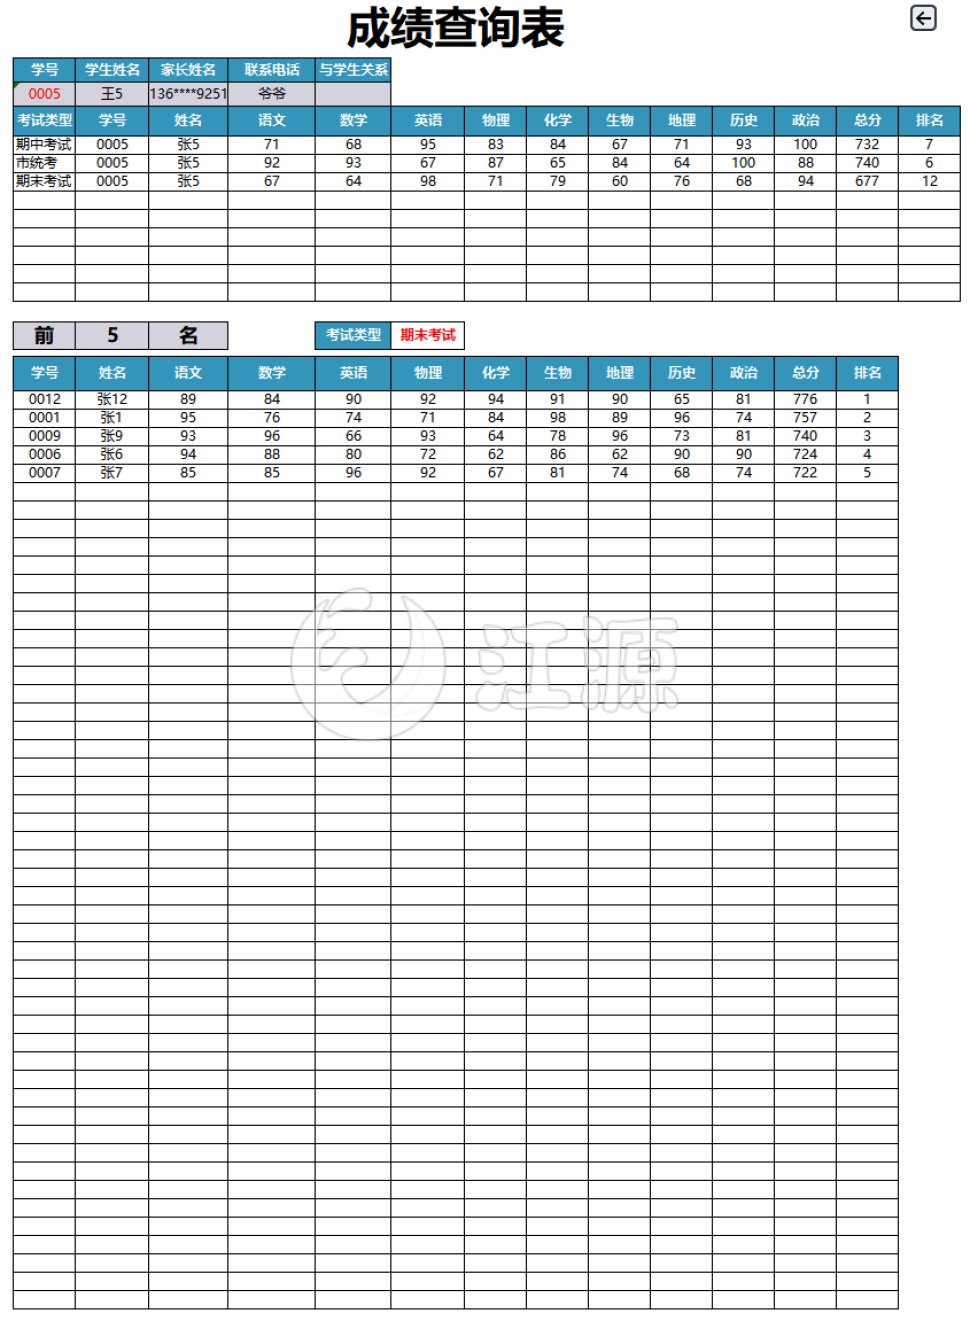 成绩管理系统表格模板(1)